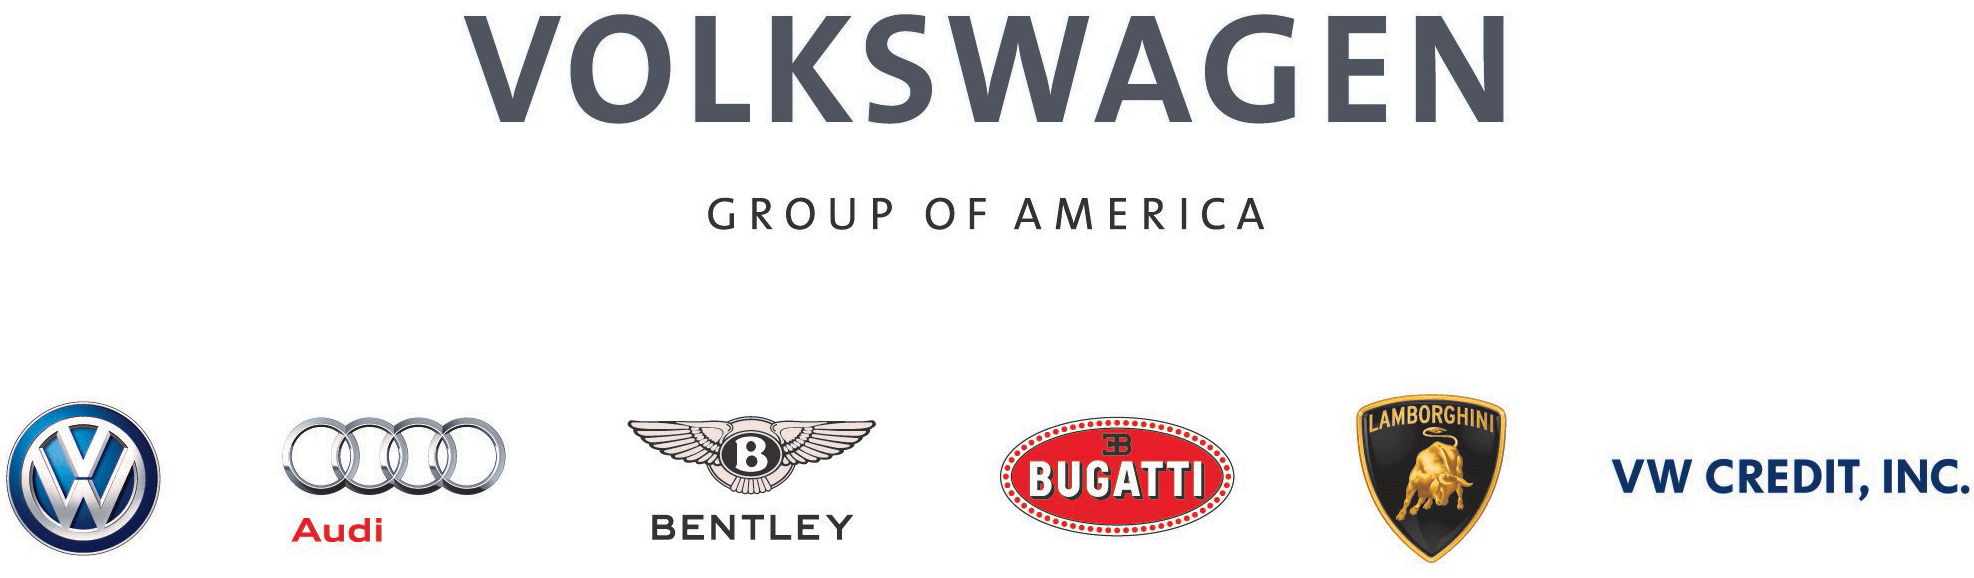 Volkswagen of America Group Logo - Volkswagen Group of America